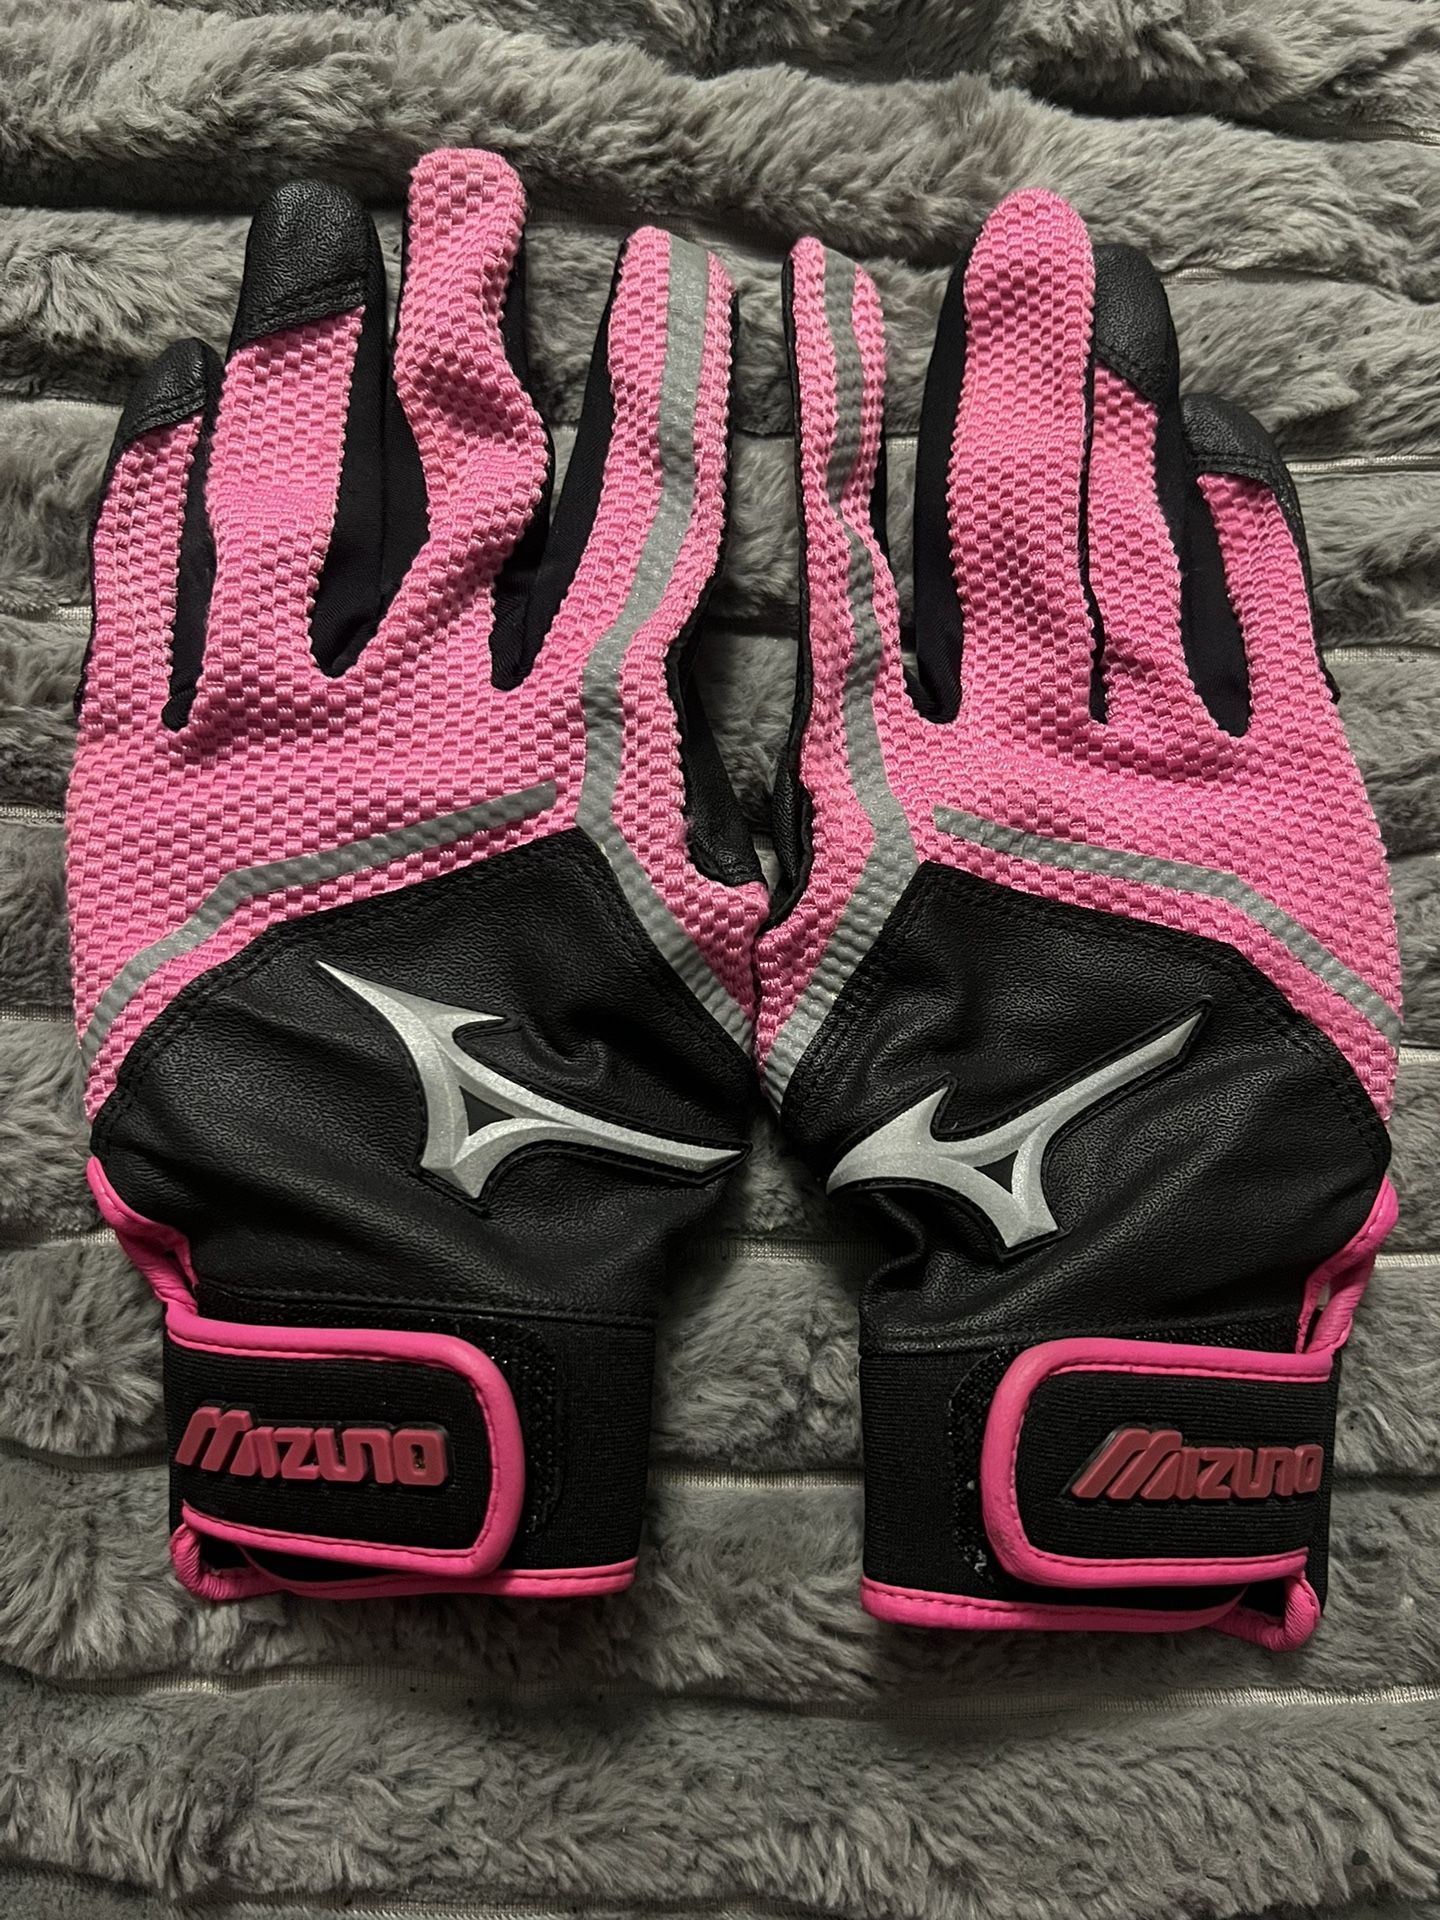 Mizuno Women’s Softball Batting Gloves 